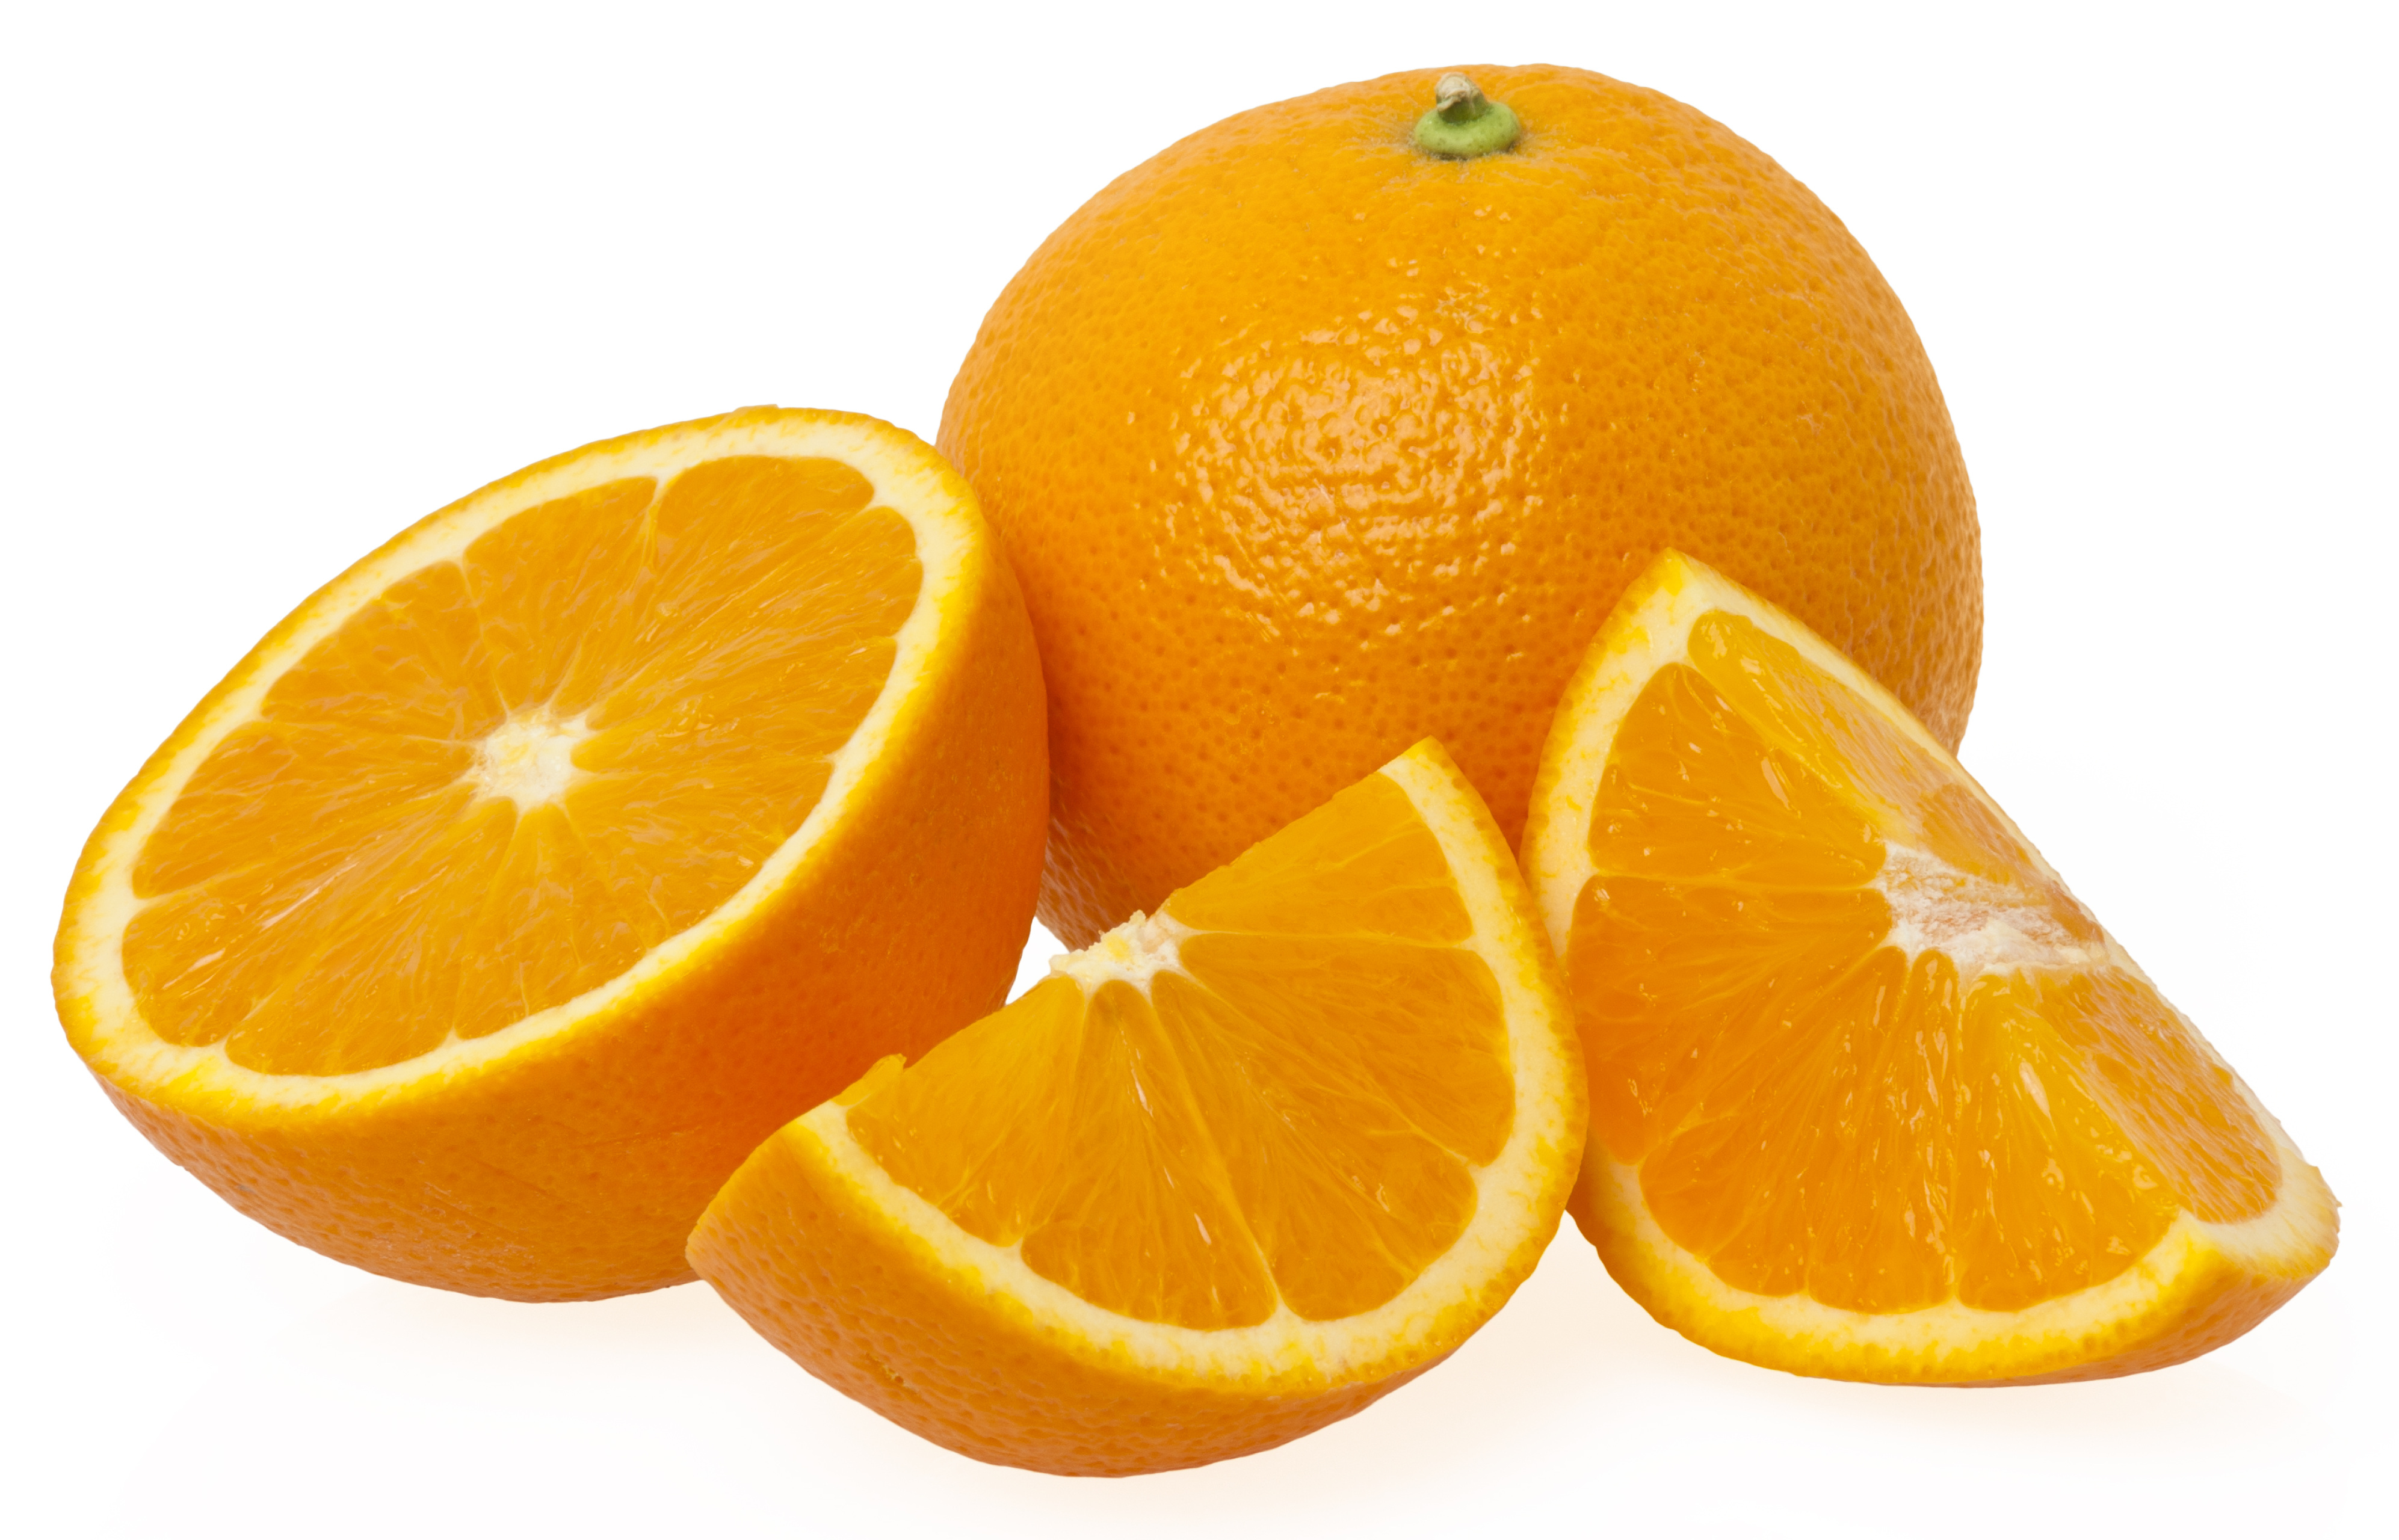 Organic oranges